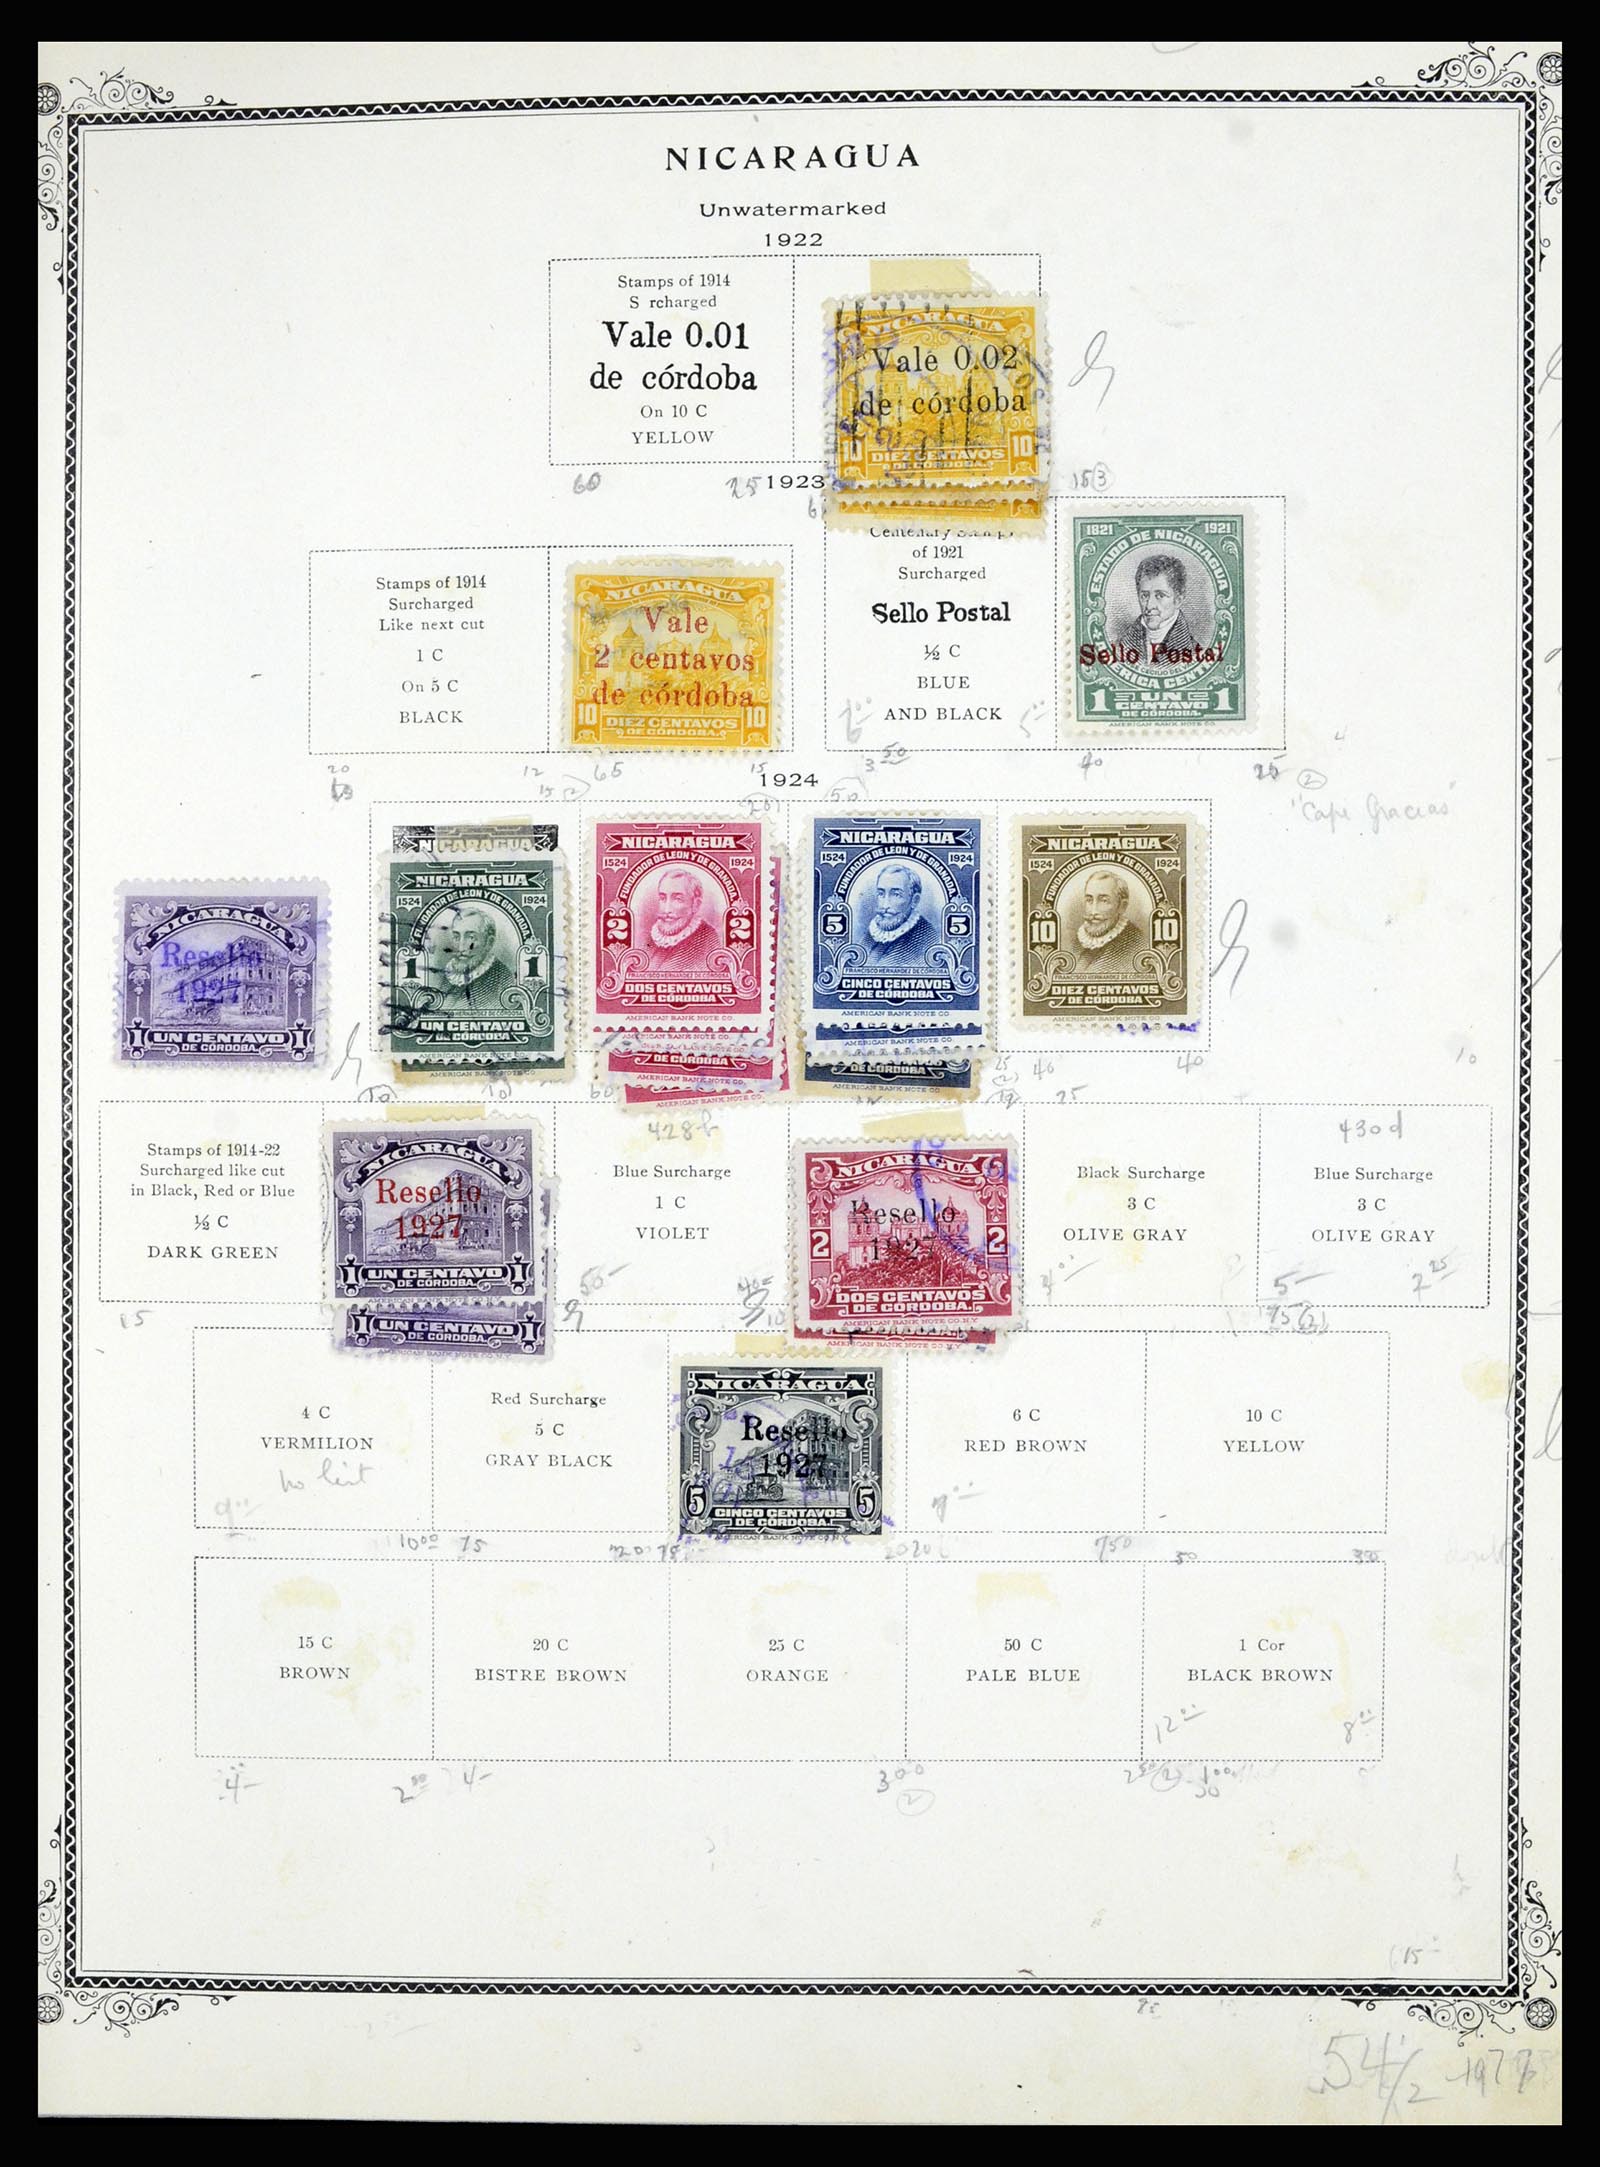 36494 072 - Stamp collection 36494 Nicaragua 1902-1945.